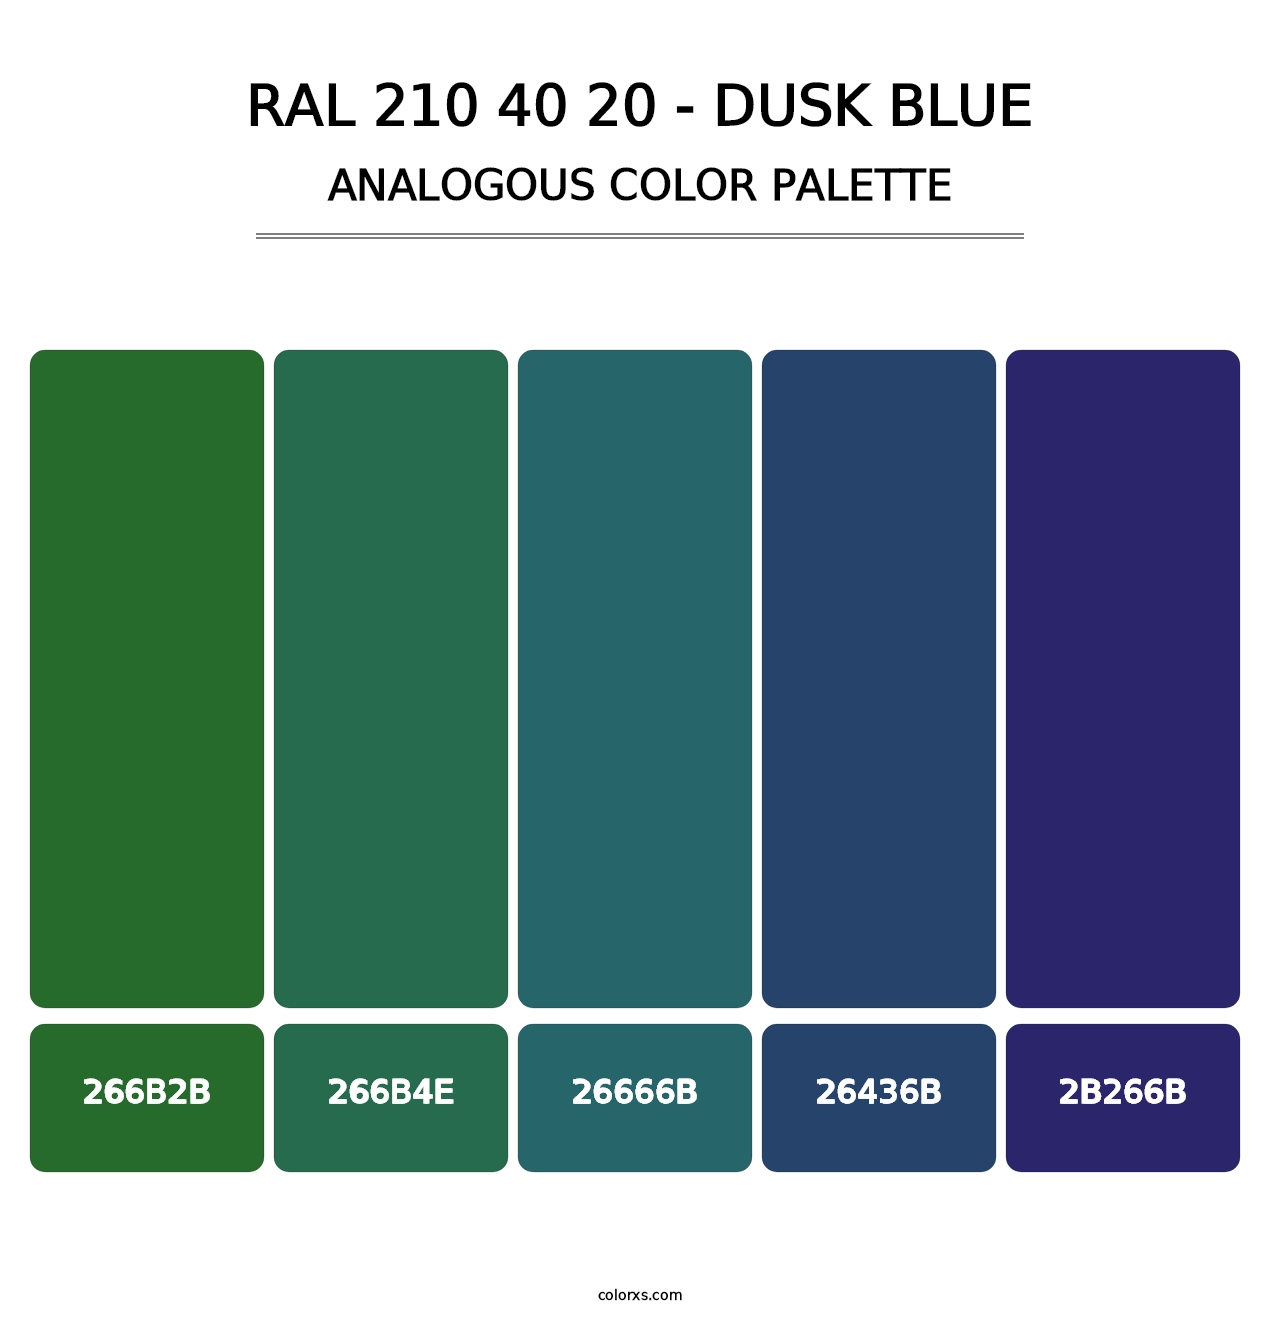 RAL 210 40 20 - Dusk Blue - Analogous Color Palette